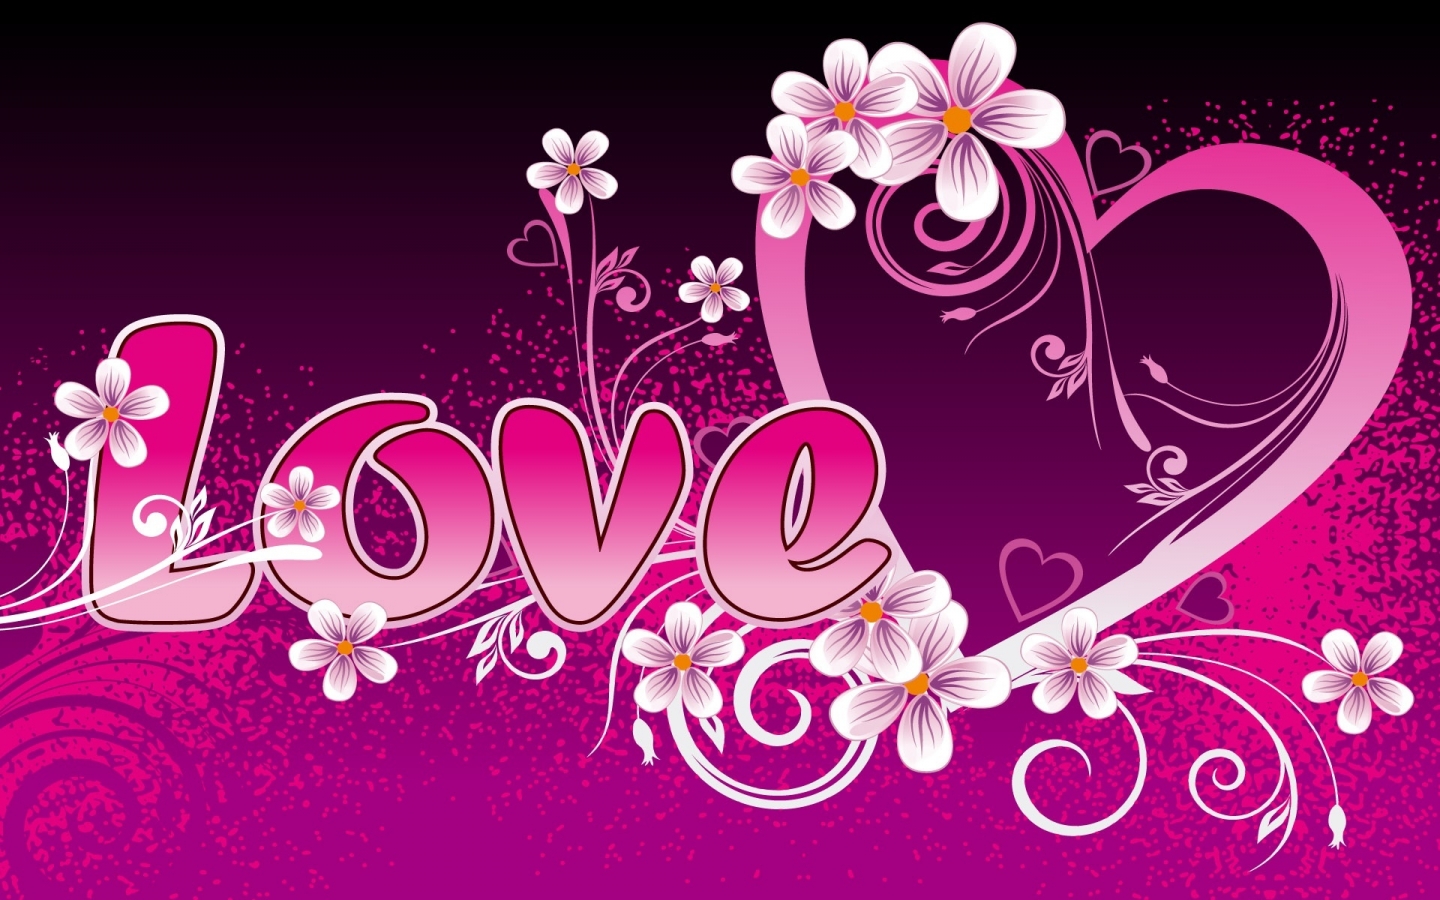 2D Love Heart Pink for 1440 x 900 widescreen resolution